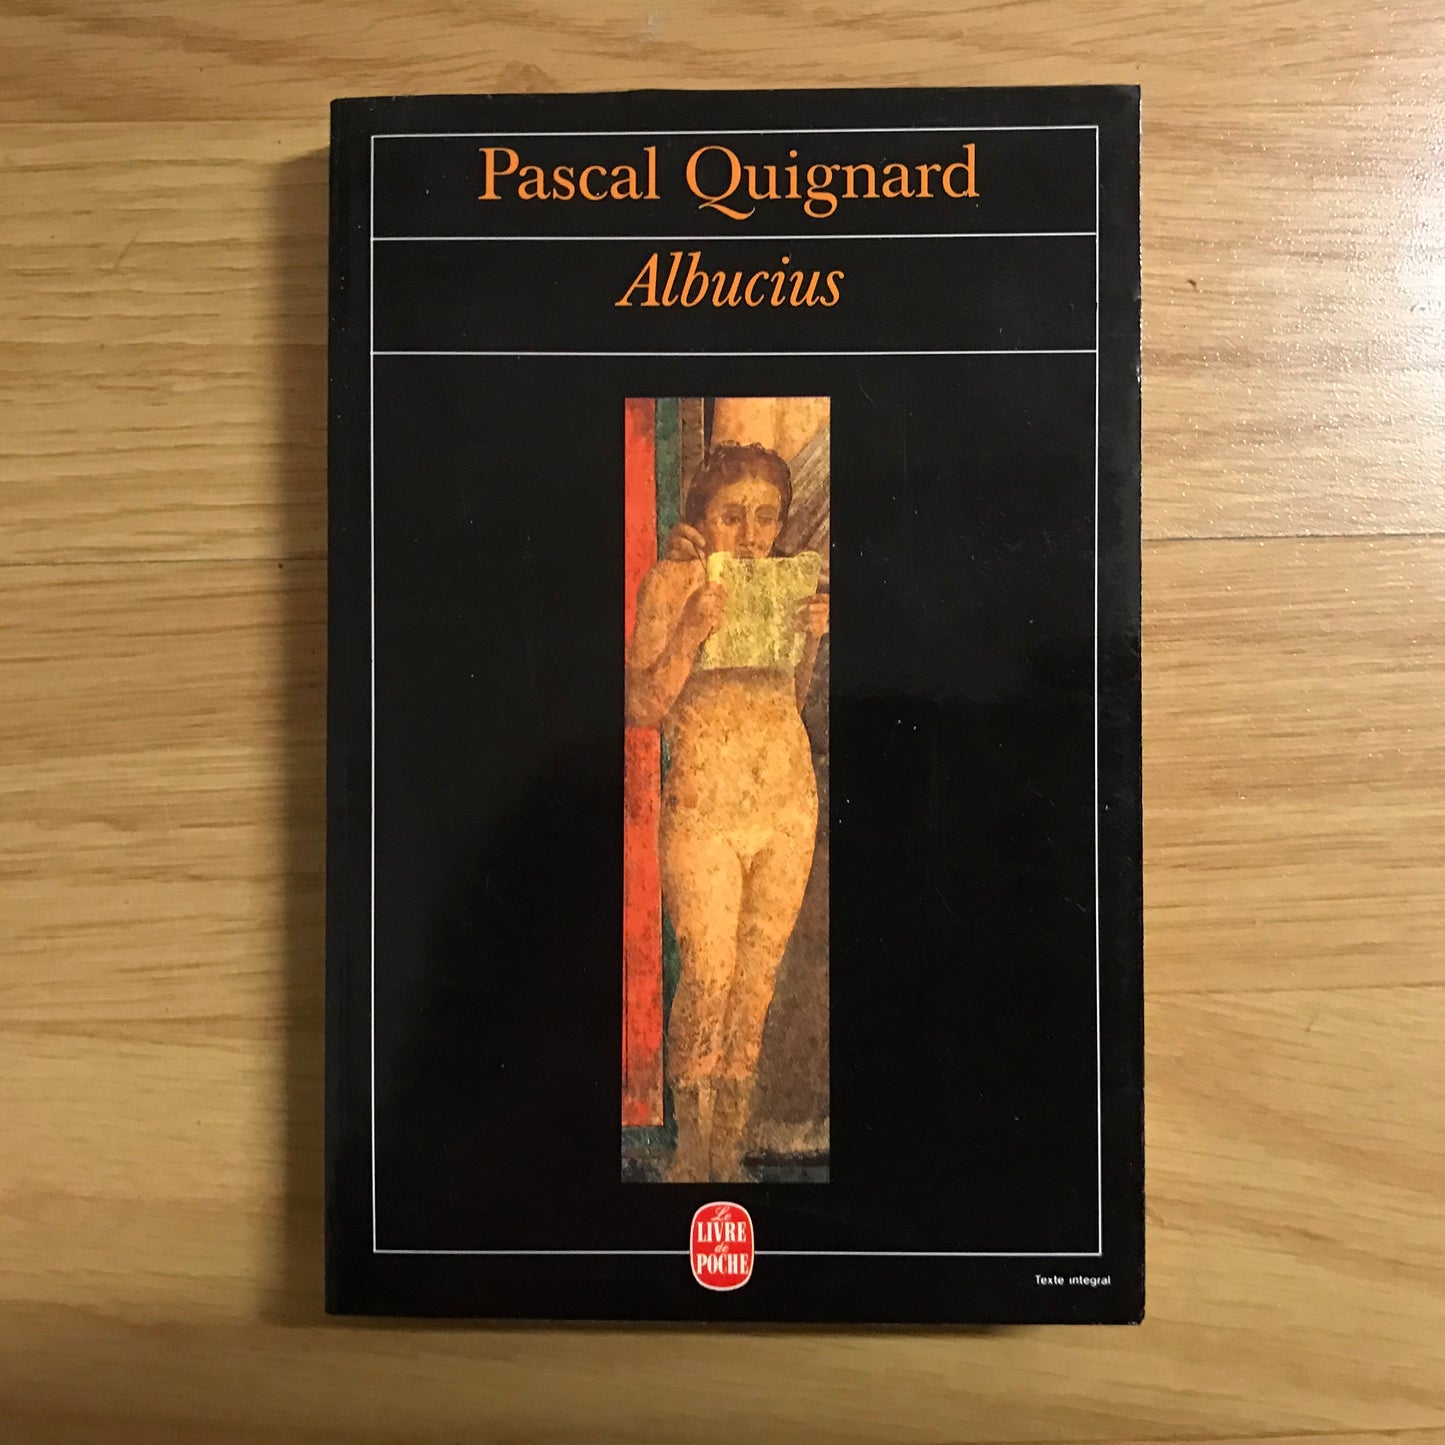 Quignard, Pascal - Albucius